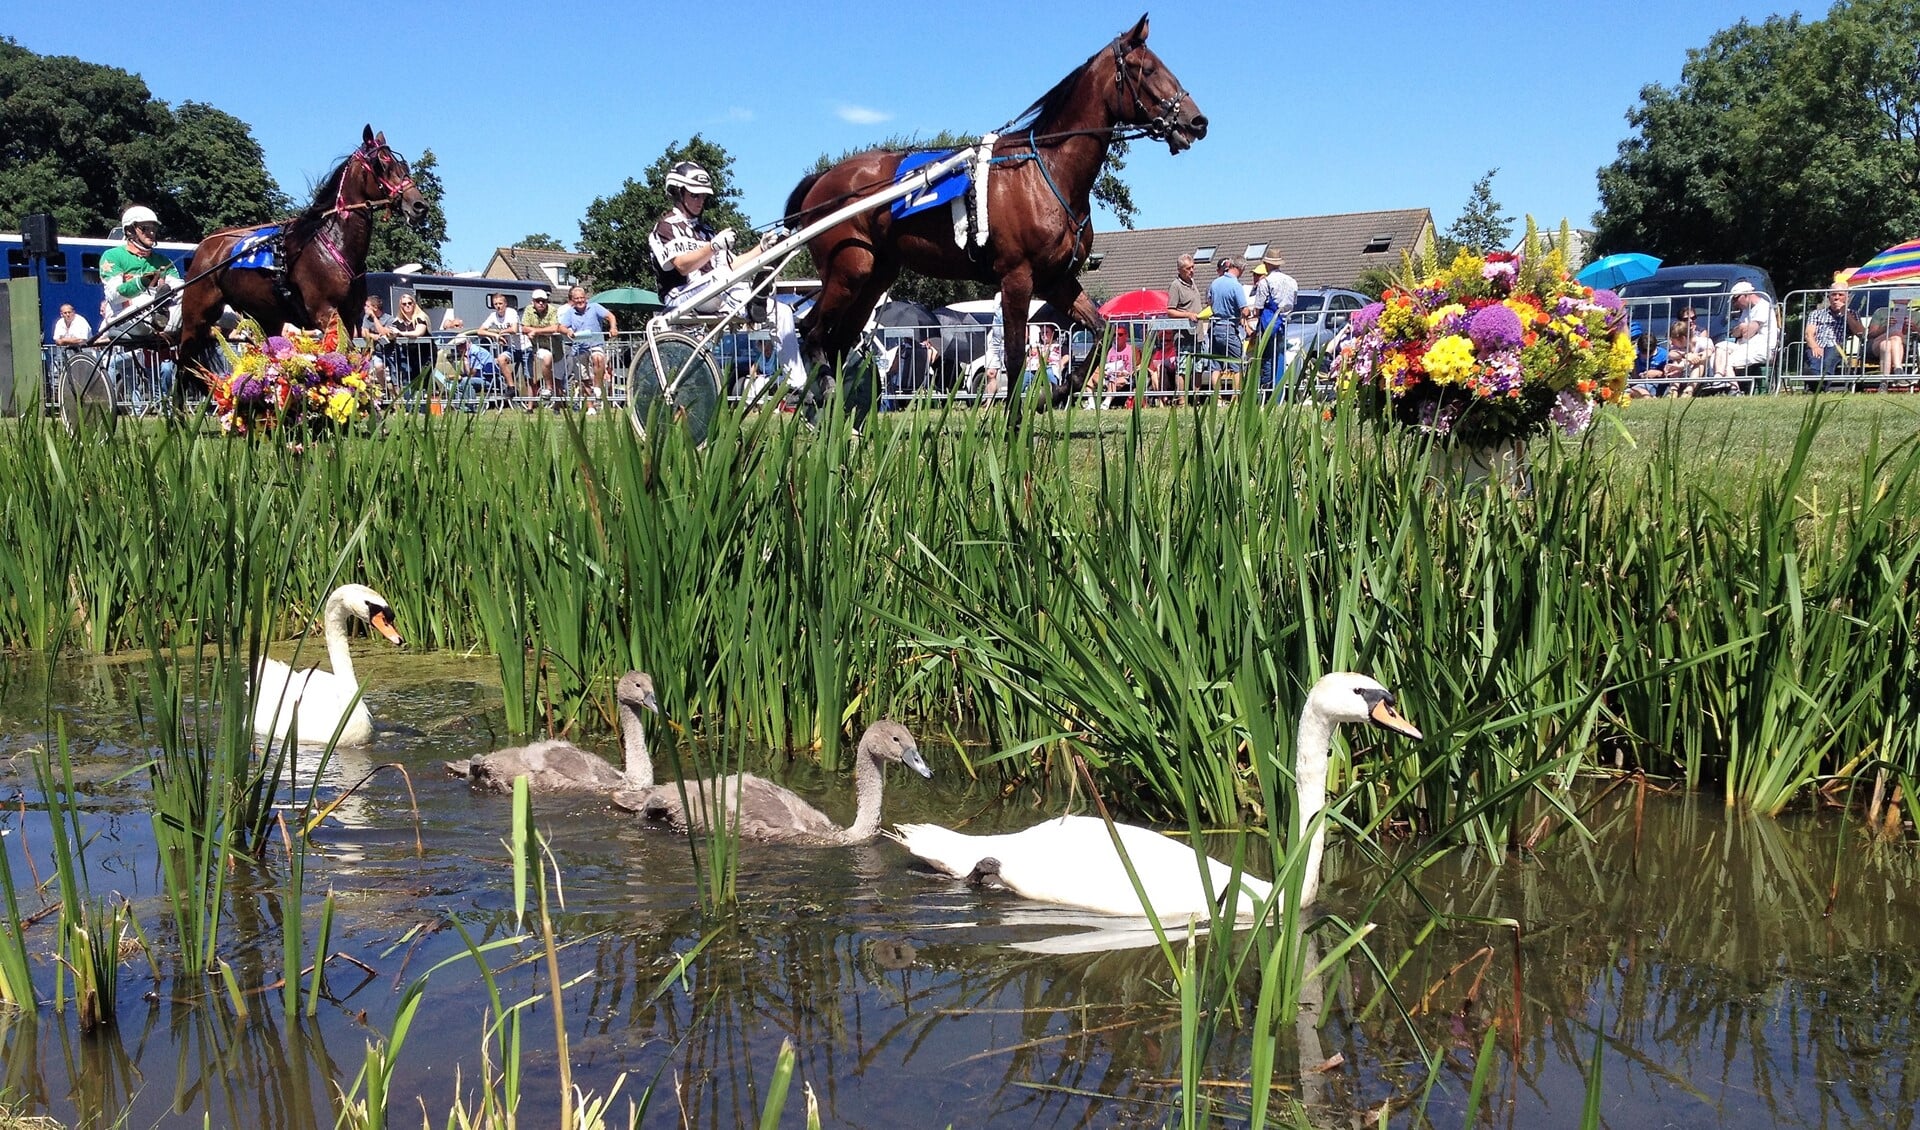 De Stompwijkse paardendagen vormen een jaarlijks evenement dat wordt georganiseerd rondom de paardensport en een begrip is in het Groene Hart (foto: pr Harddraverijvereniging Nooit Gedacht).